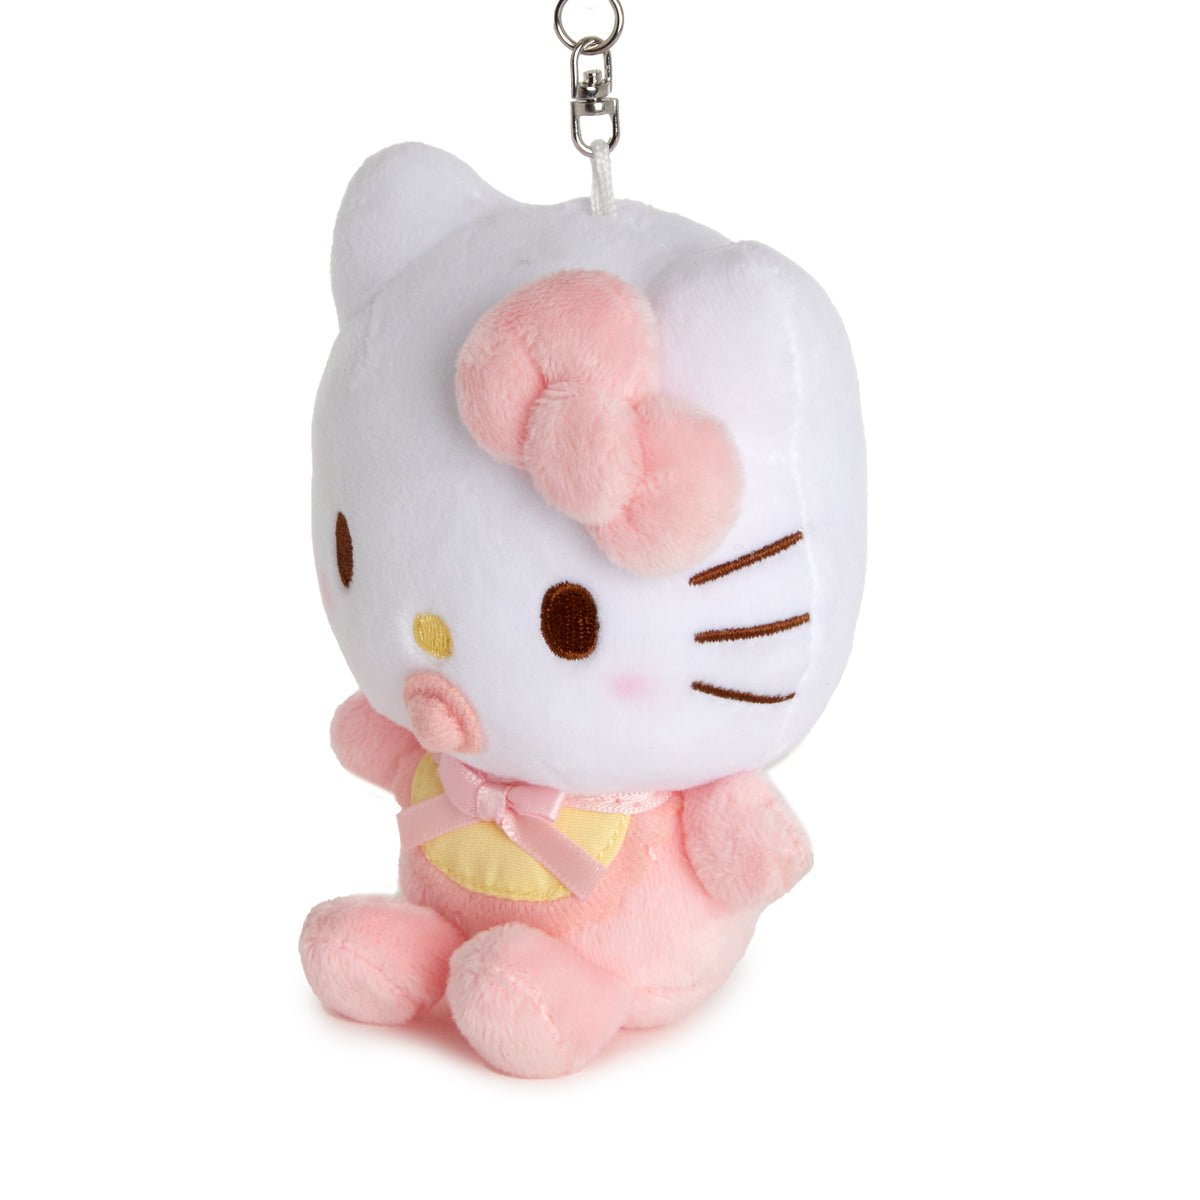 Hello Kitty Baby Mascot Plush Plush Global Original   